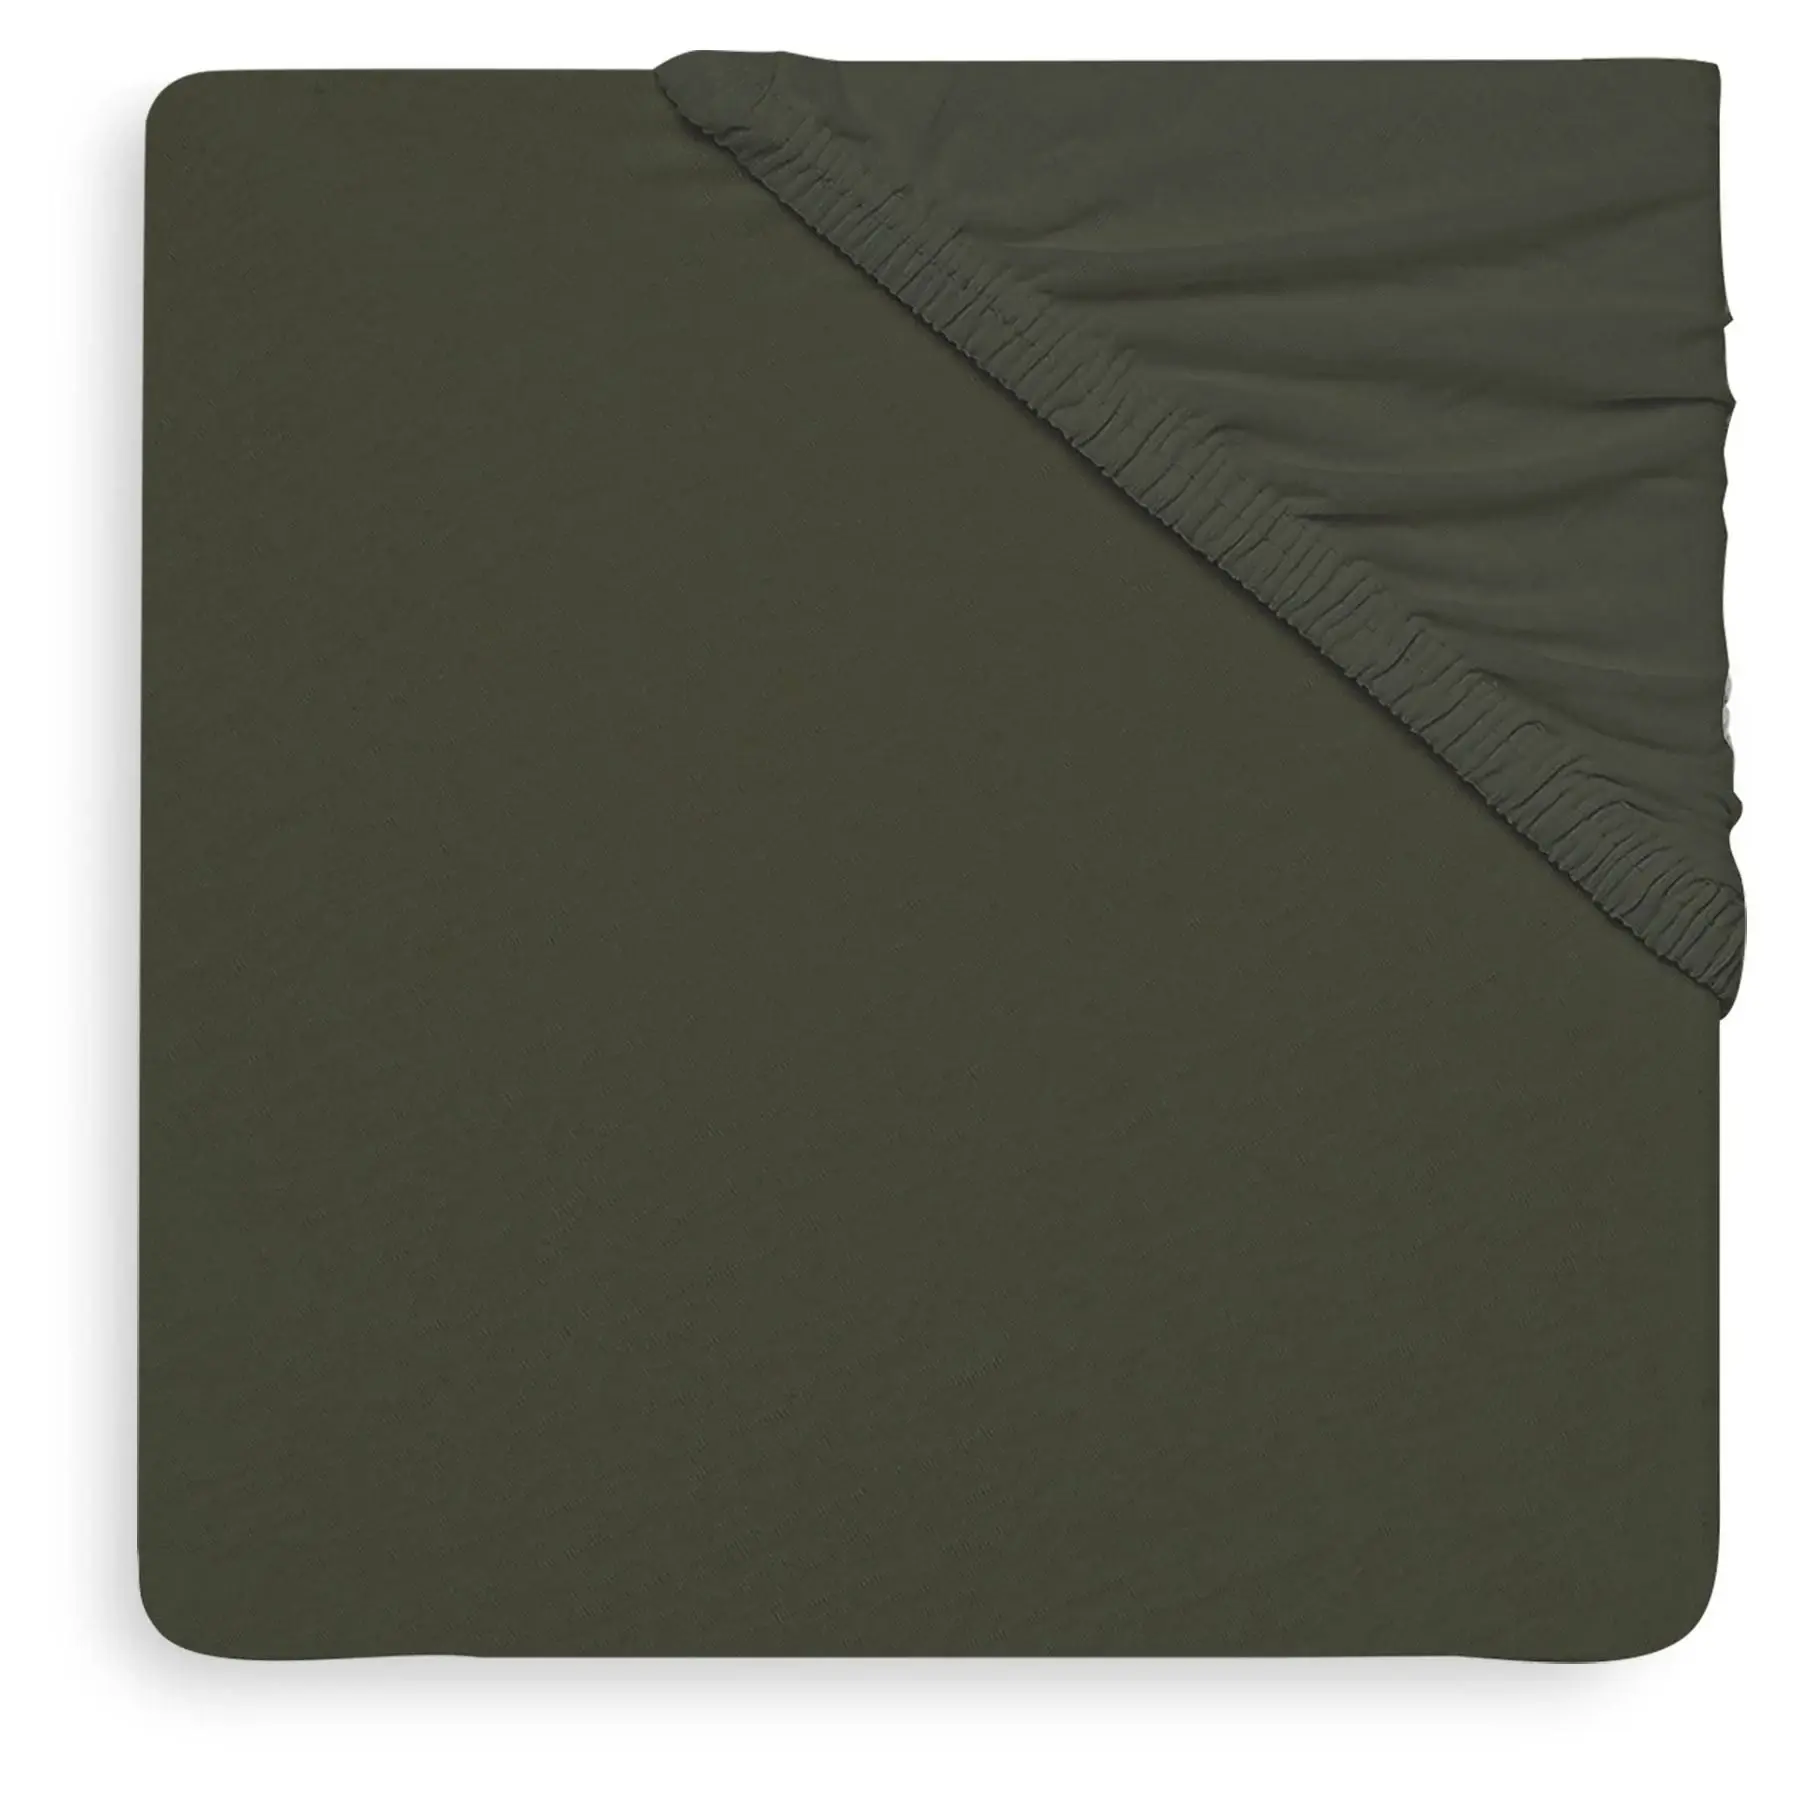 Jollein Hoeslaken Jersey 60 x 120 cm Ash Green/Leaf Green (2-pack)